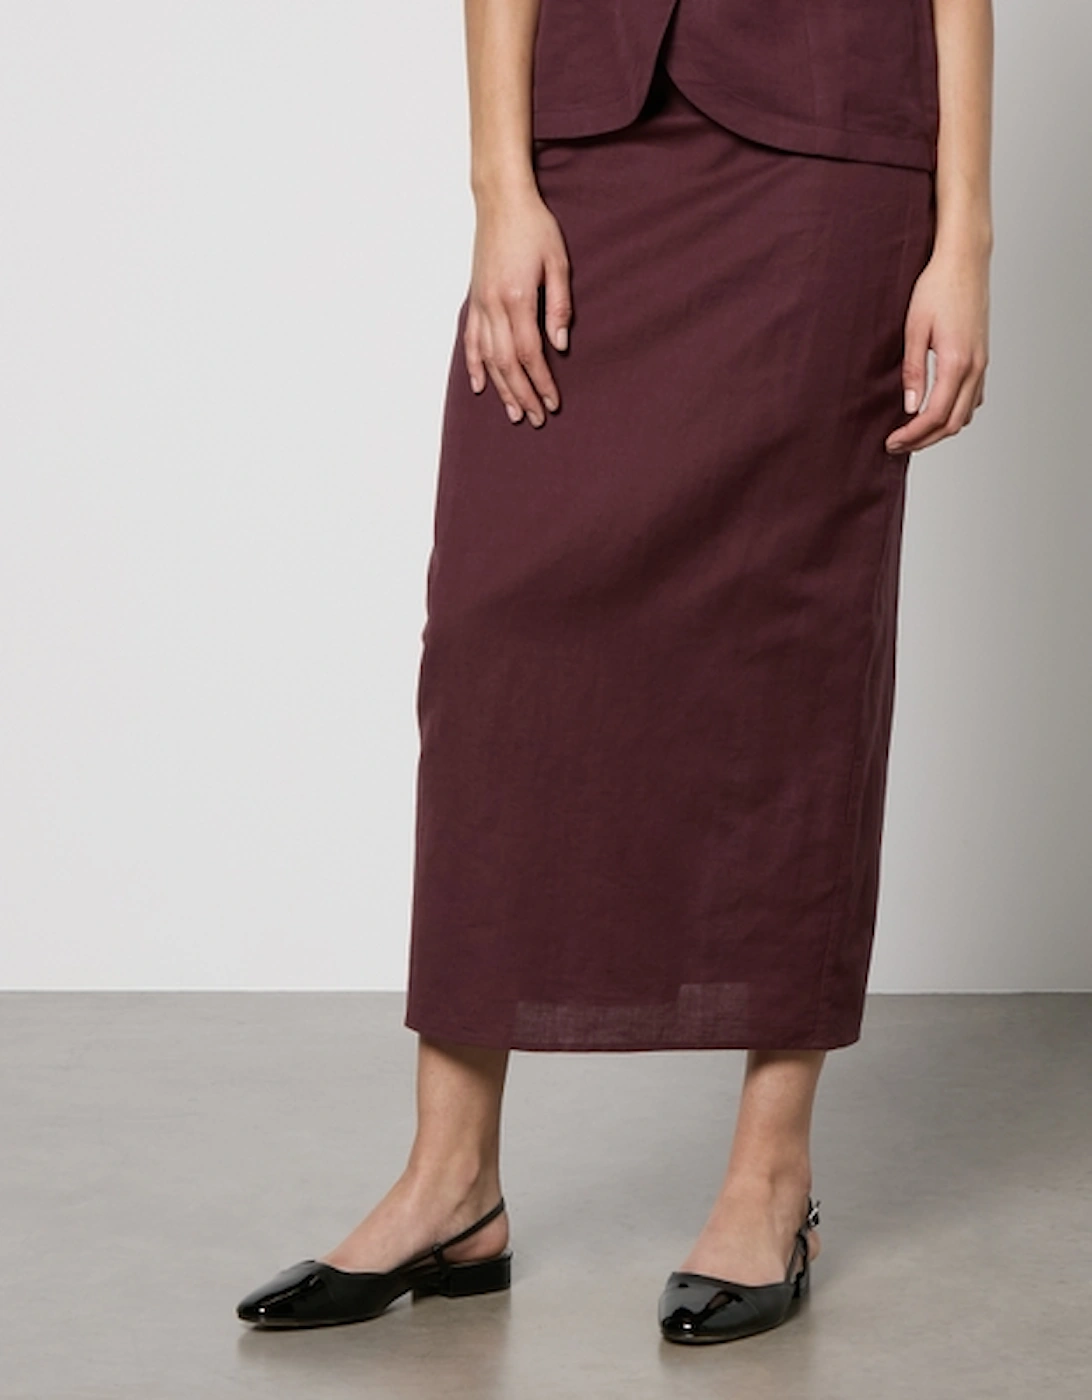 Mandy Euroflax Linen-Blend Midaxi Skirt, 2 of 1